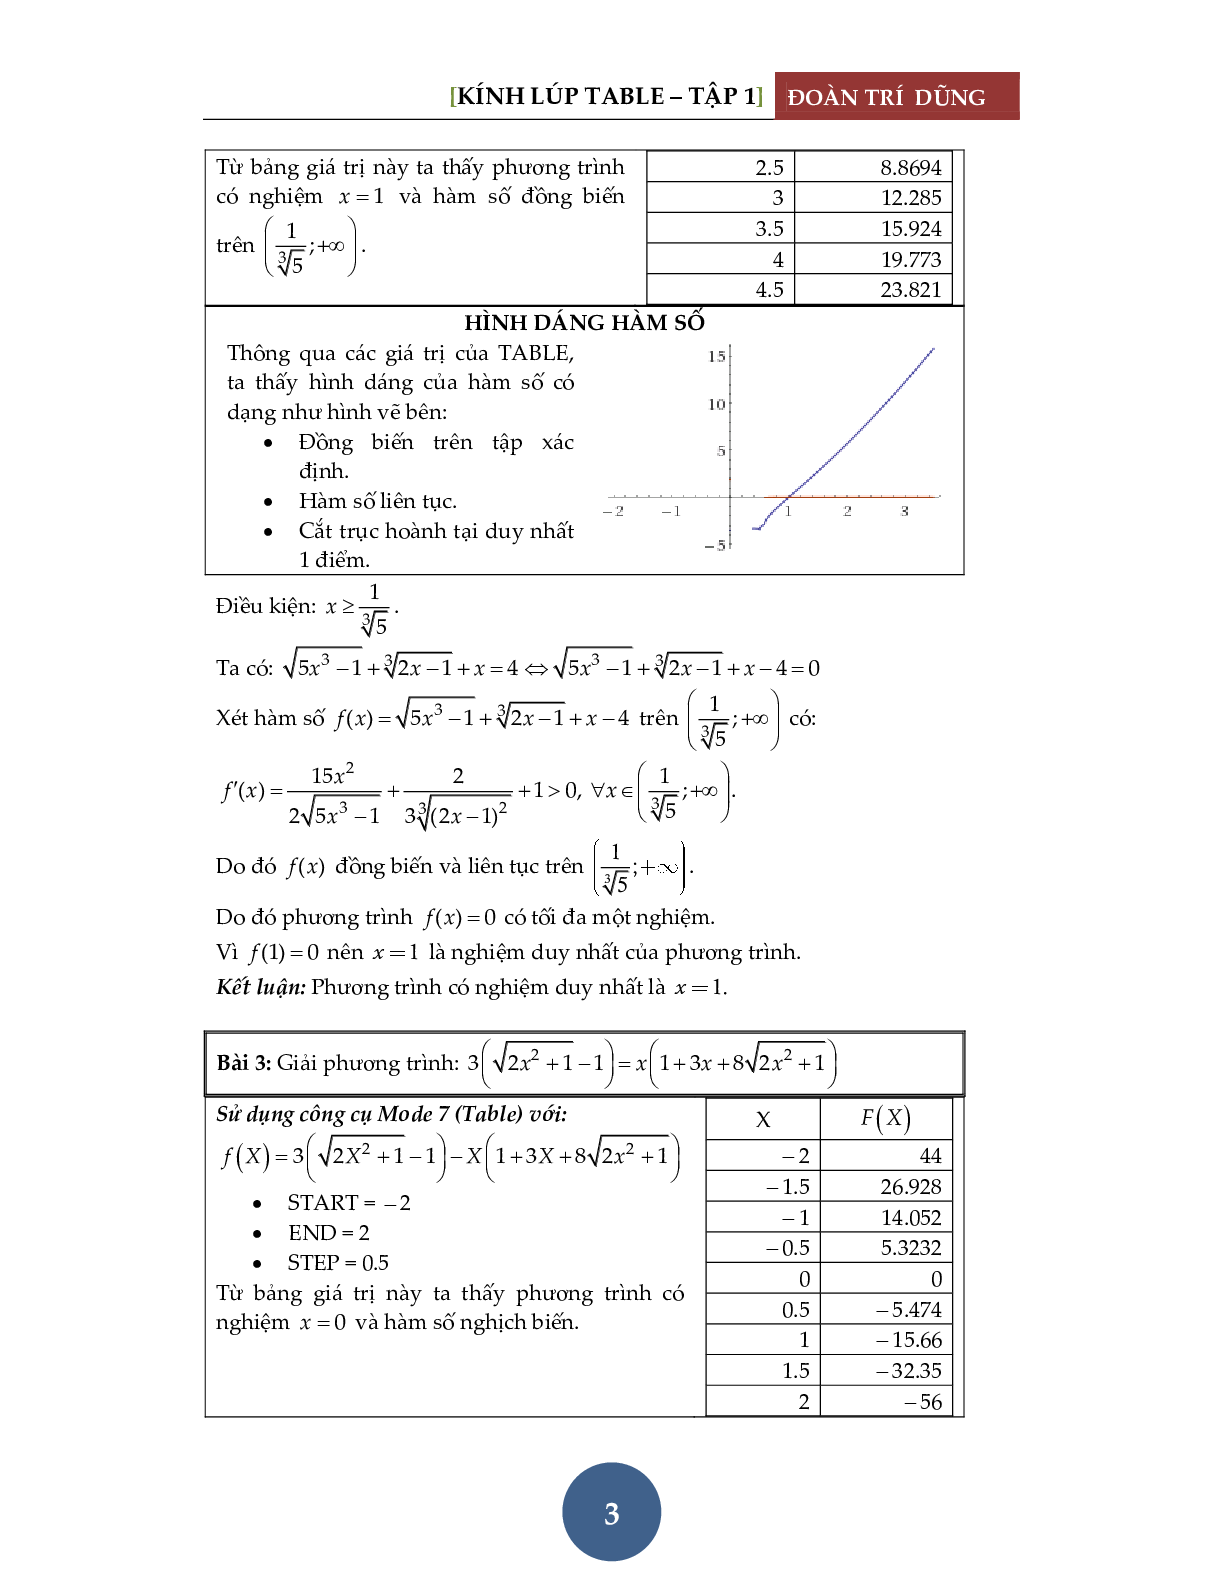 Giải phương trình bằng máy tính Casio – Đánh giá hàm đơn điệu (trang 4)